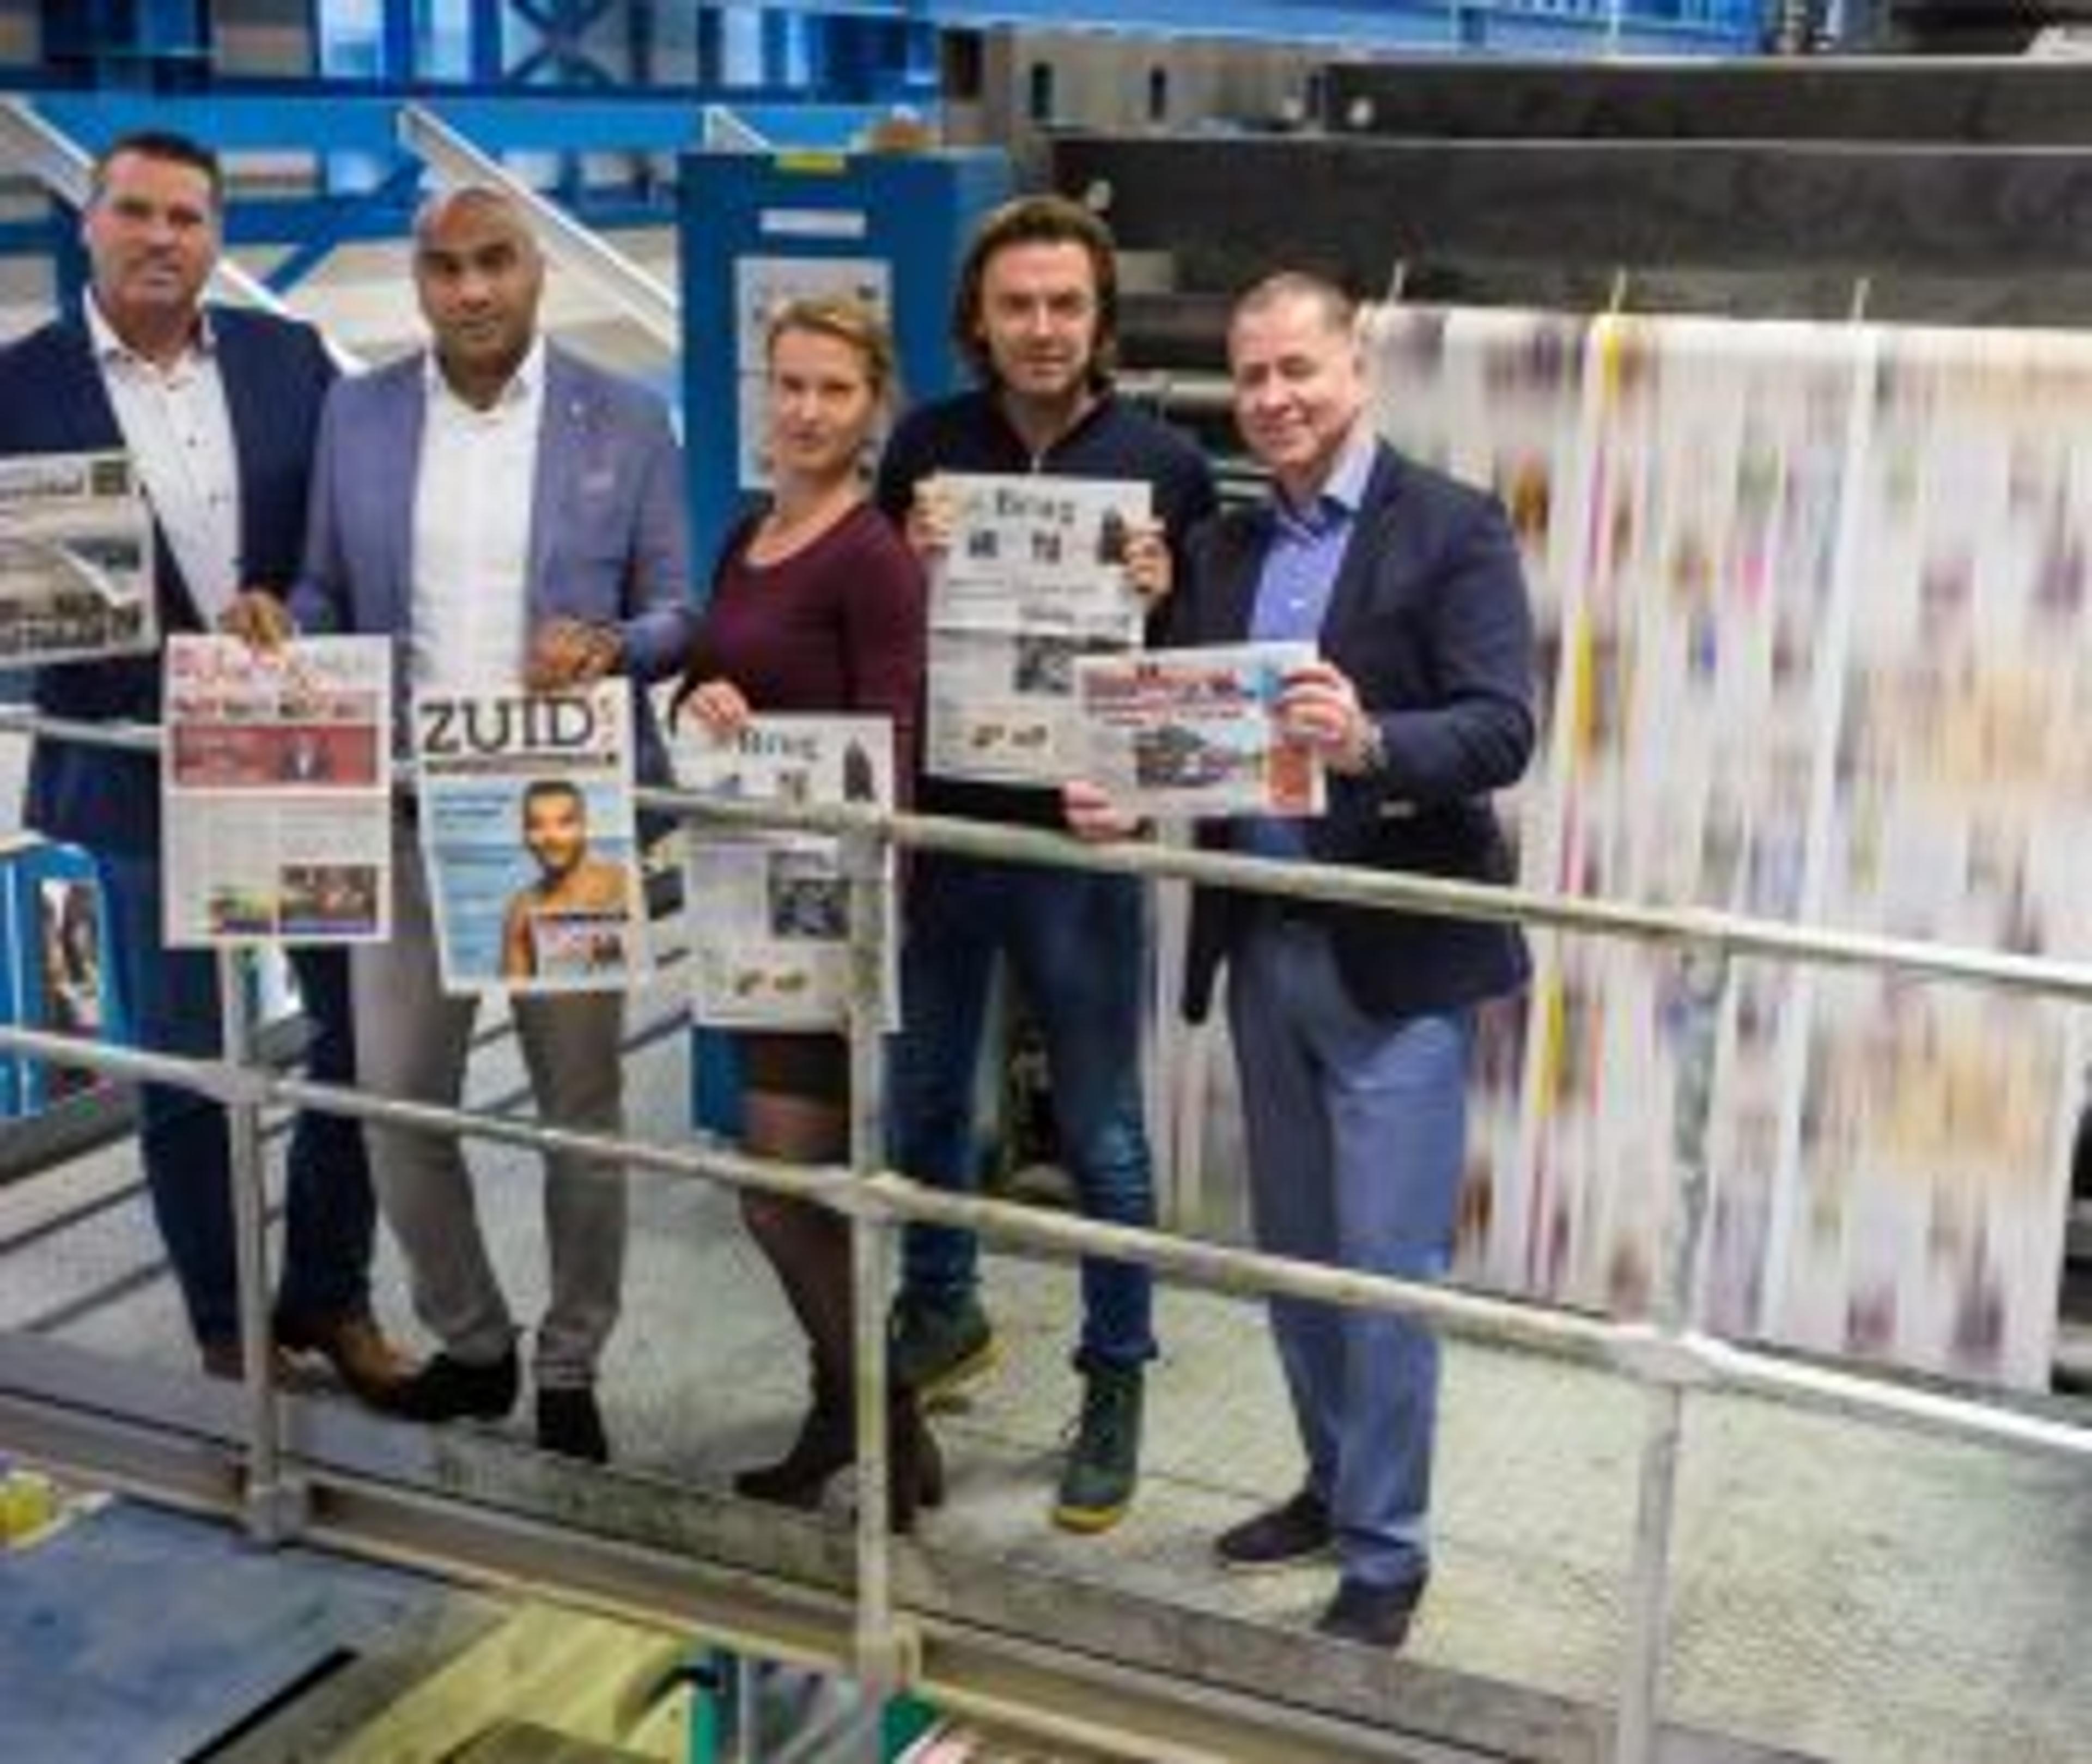 Amsterdamse huis-aan-huisbladen verenigd in Mediagroep Amsterdam